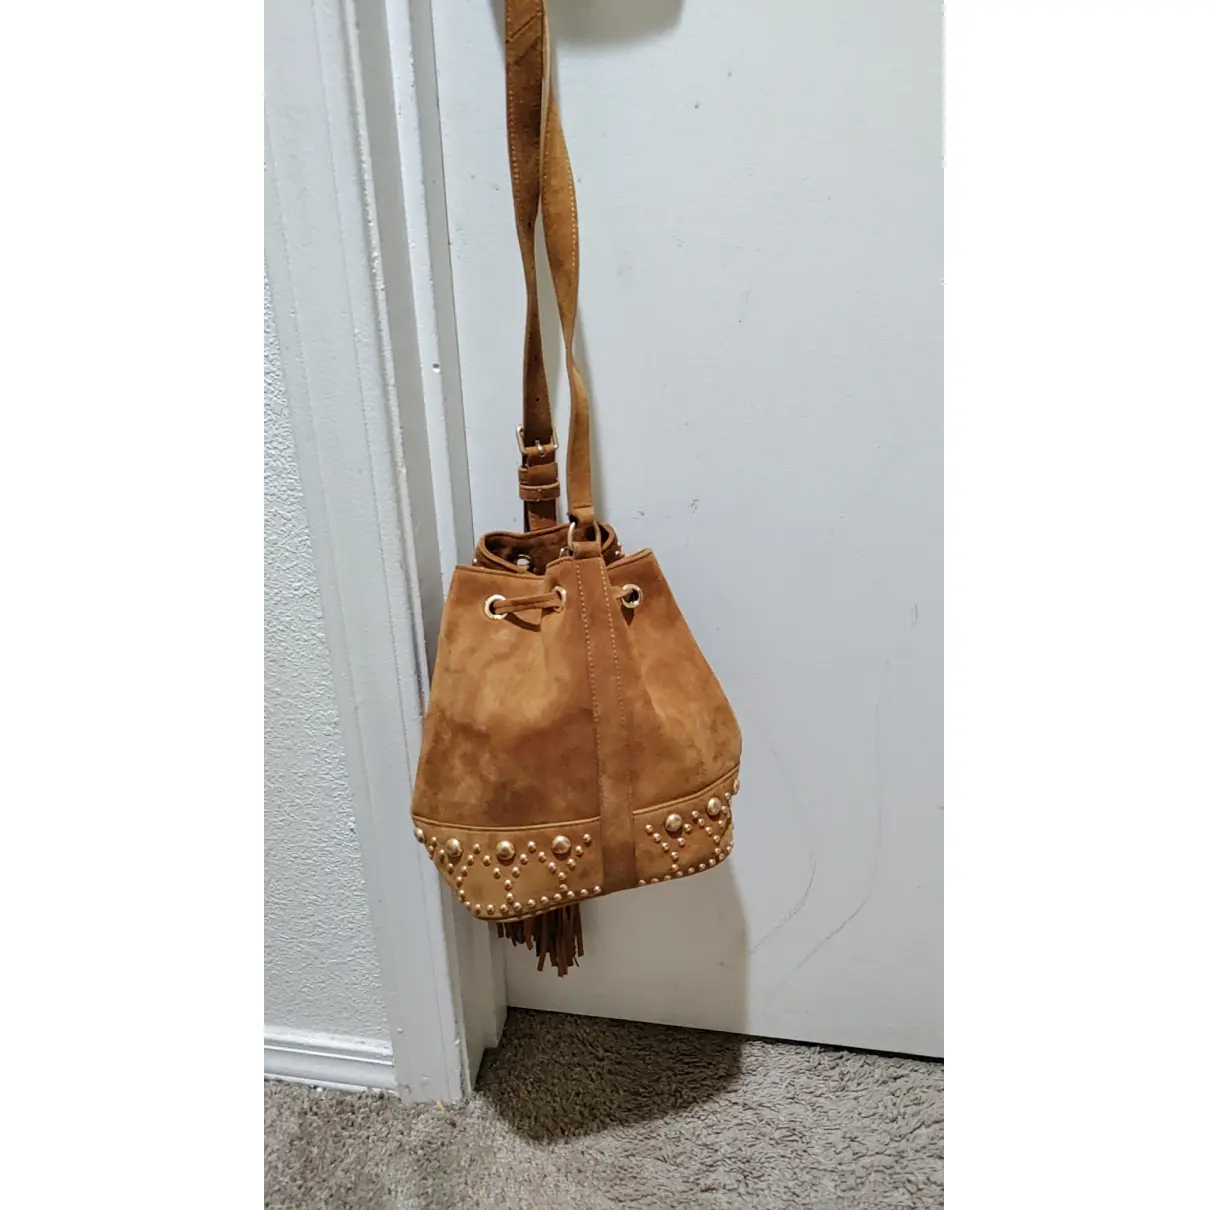 Buy Saint Laurent Y Studs handbag online